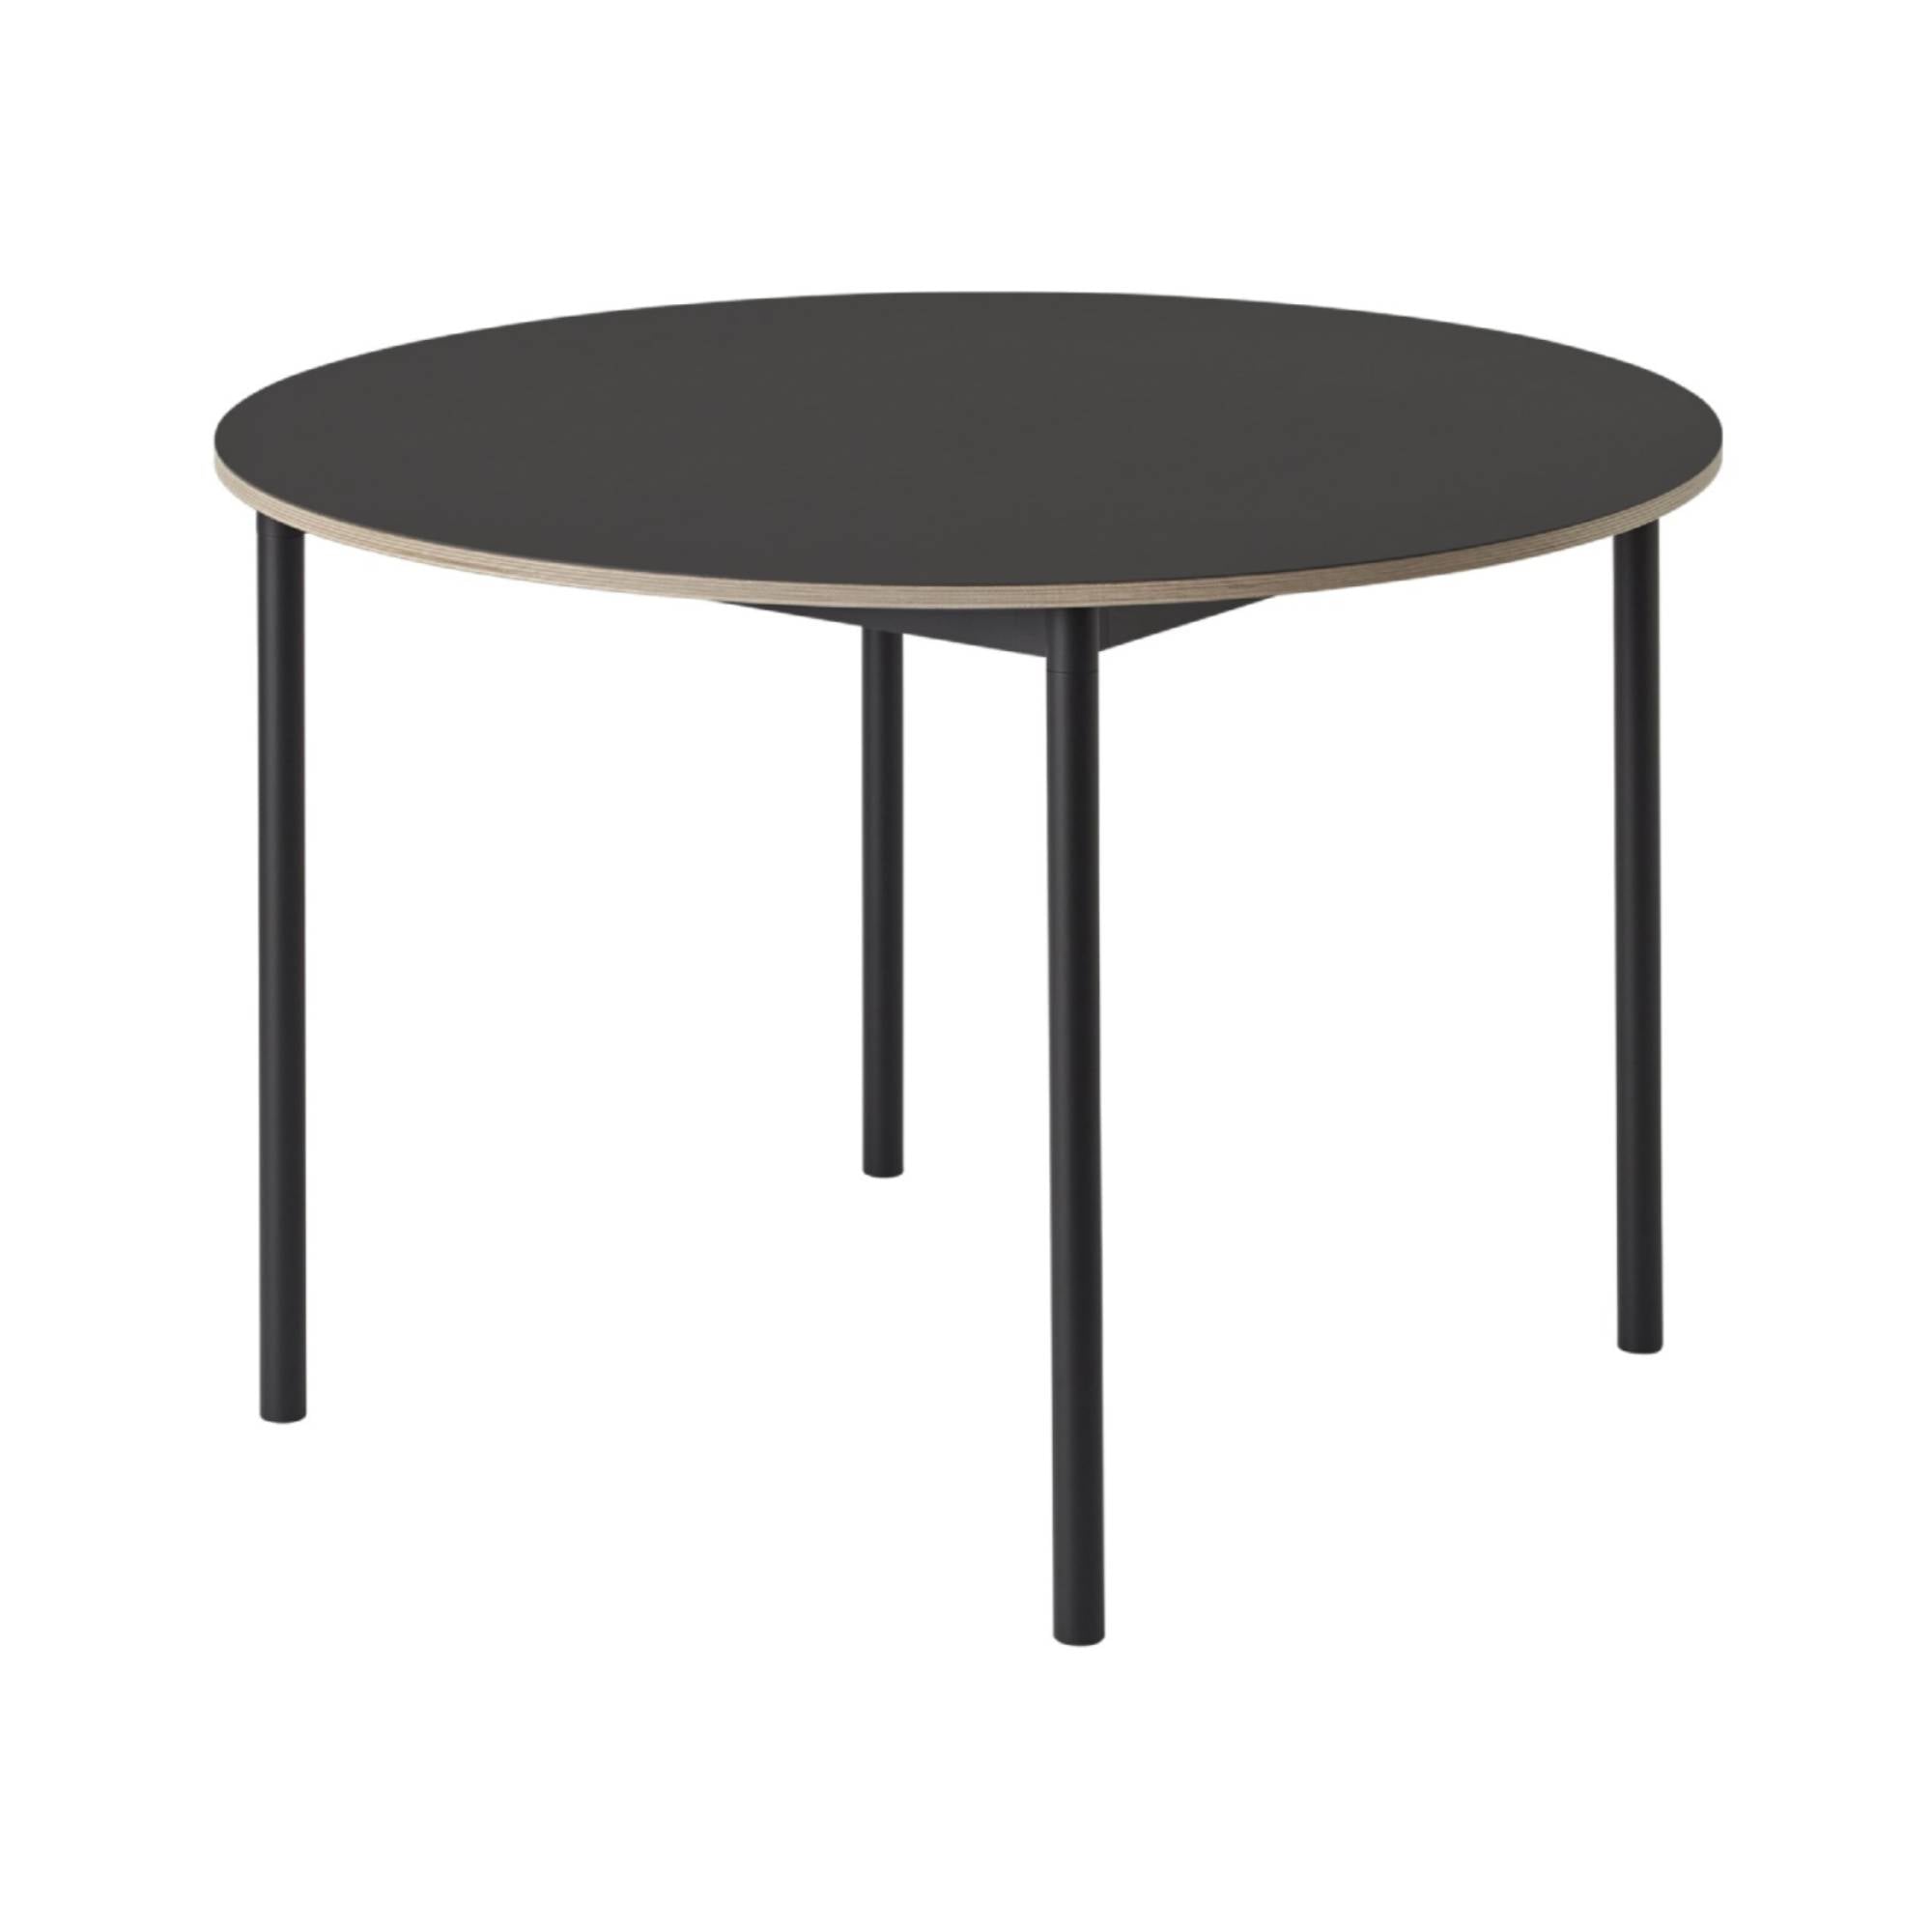 Base Table: Round + Large - 50.4